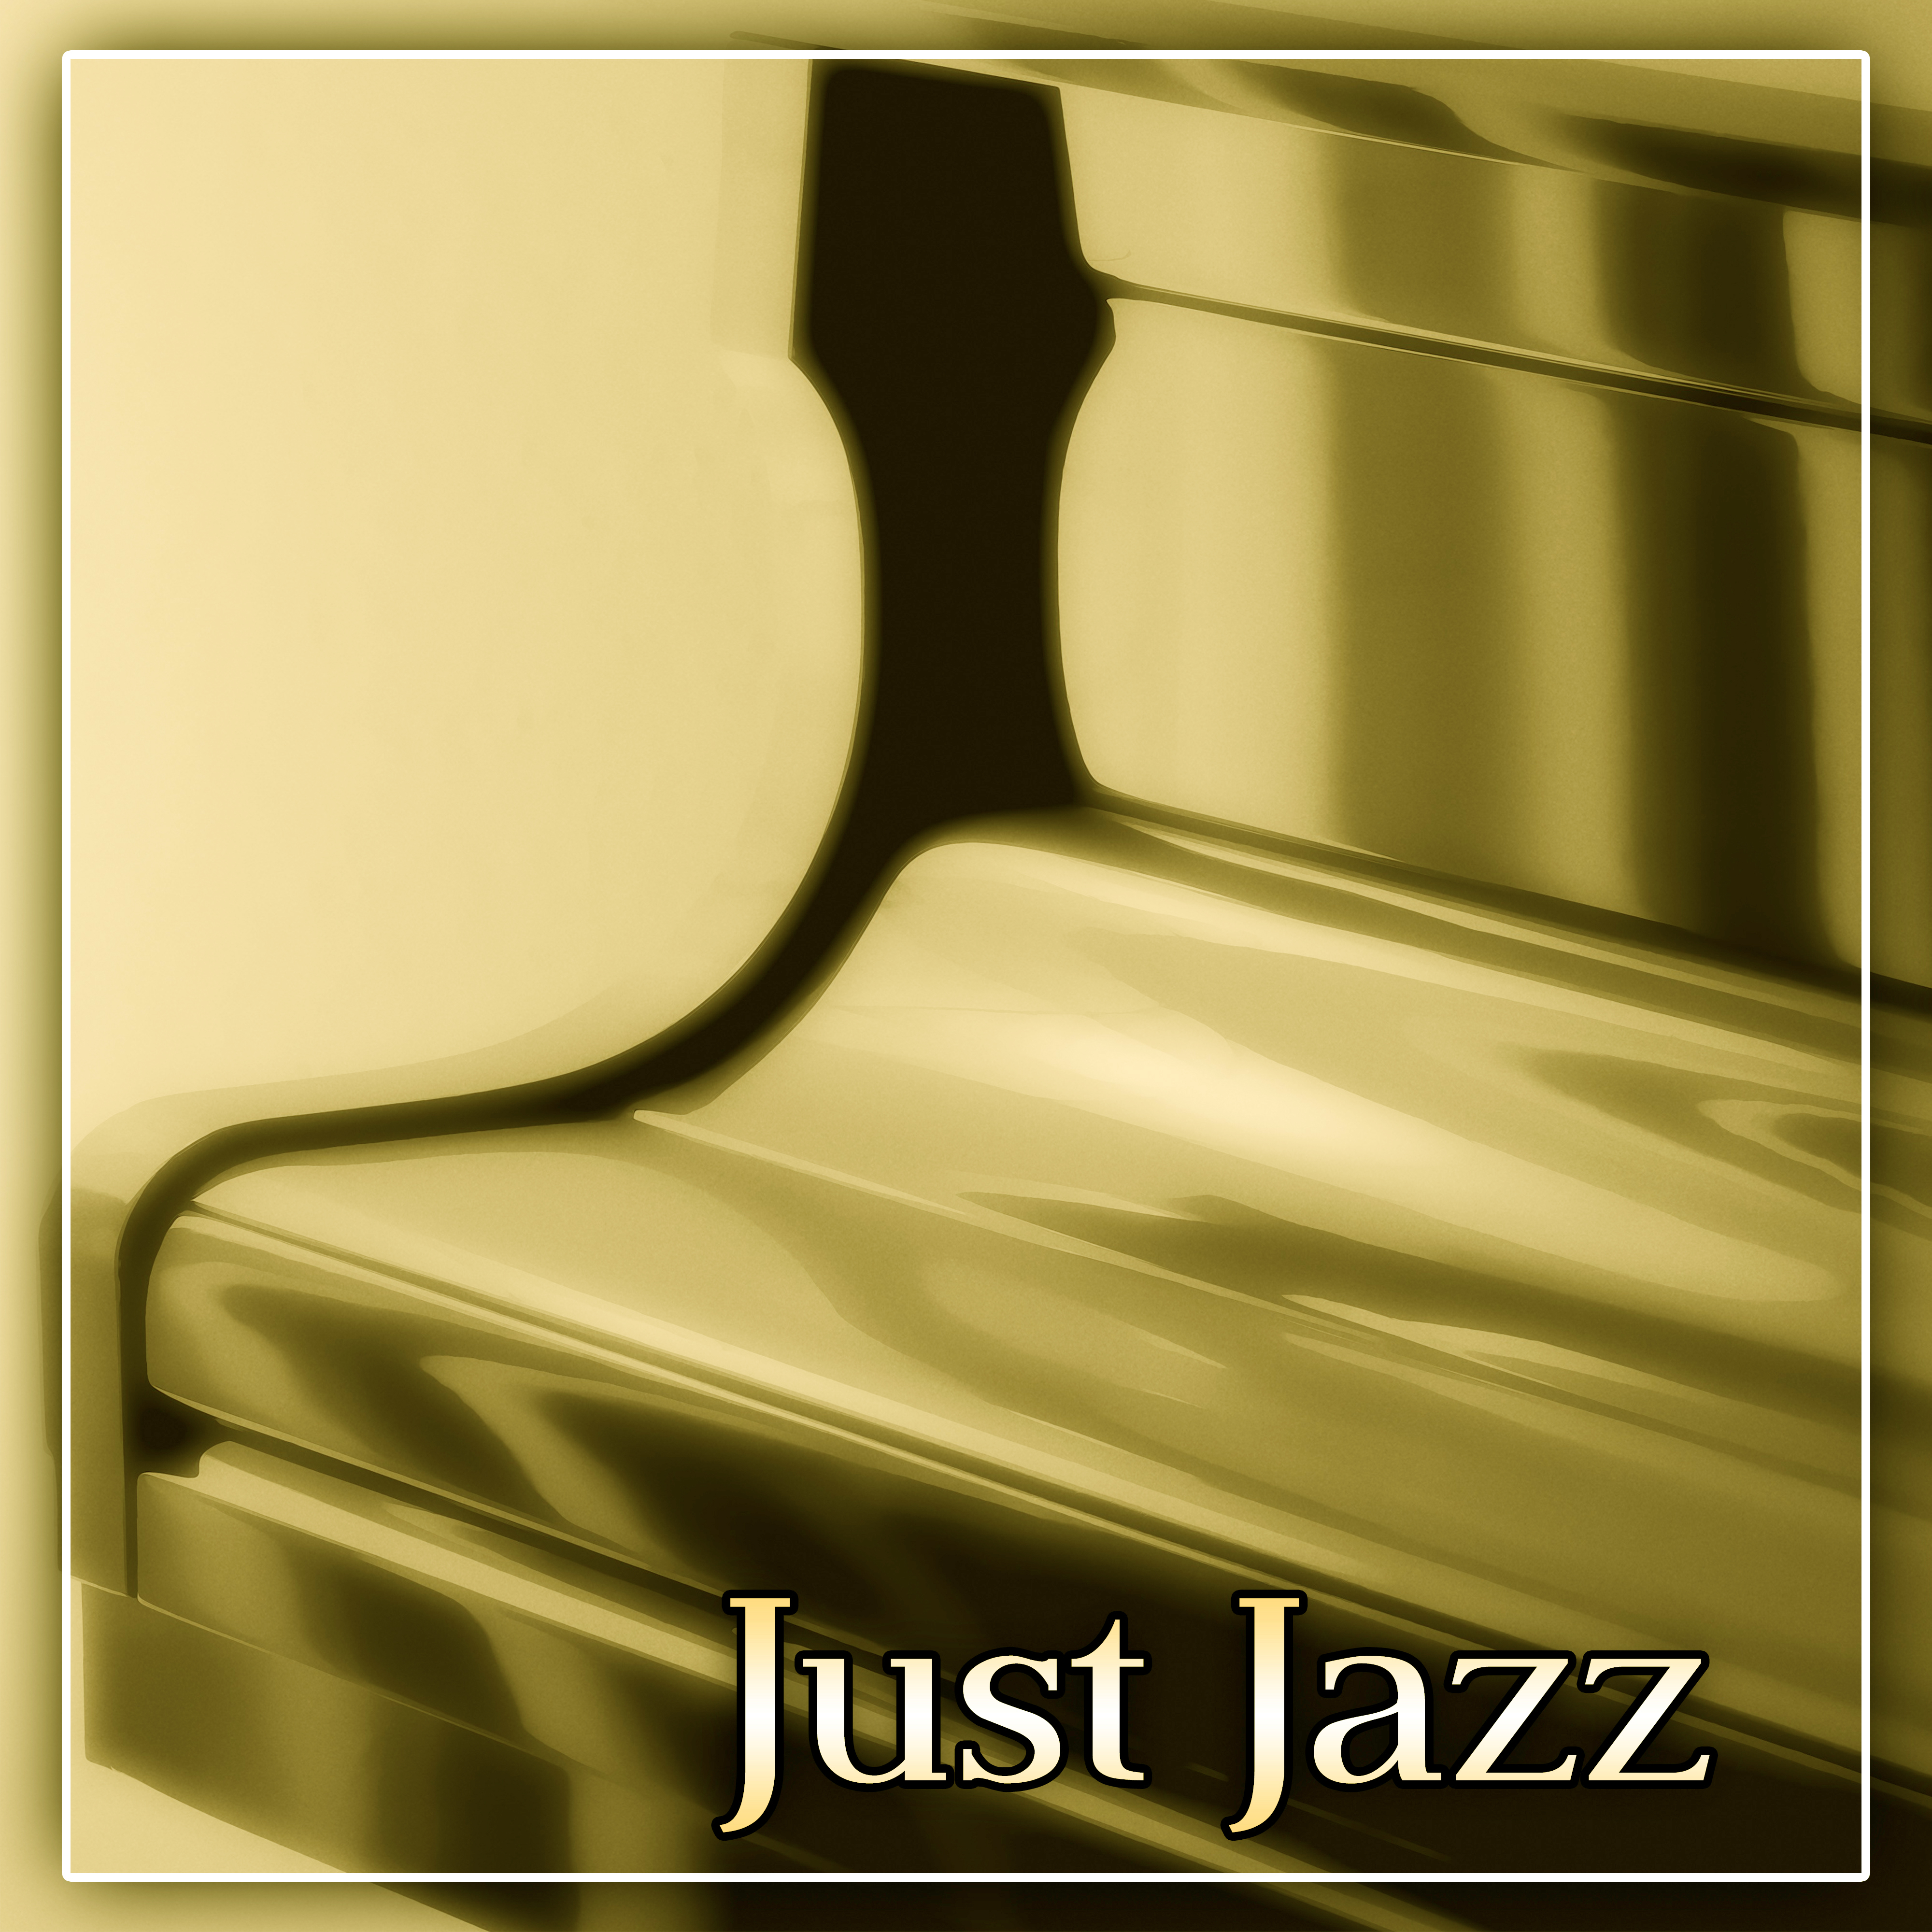 Just Jazz  Brilliant Sounds of Jazz,  Best Jazz Music for Restaurant, Jazz Club  Jazz Bar, Instrumental Piano Sounds for Bohema